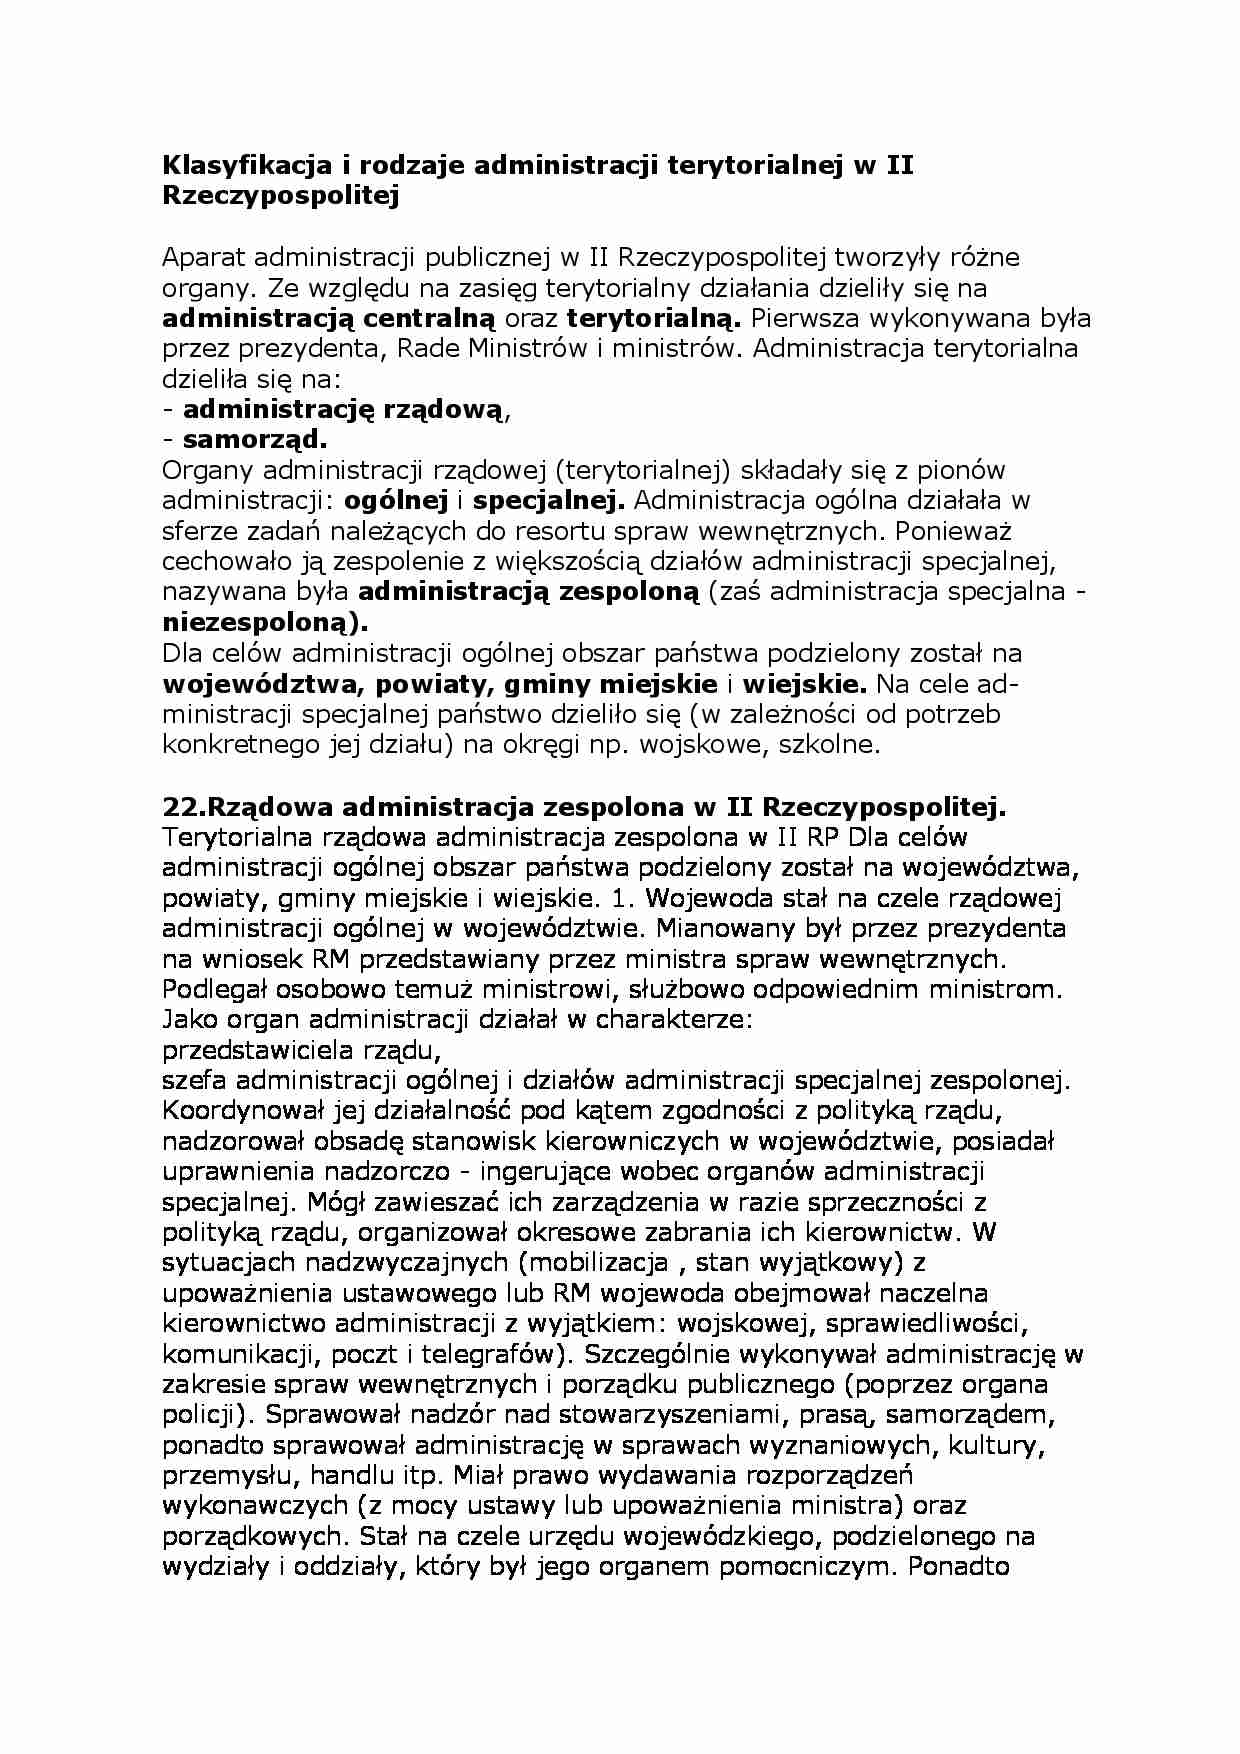 Klasyfikacja i rodzaje administracji terytorialnej w II Rzeczypospolitej - strona 1